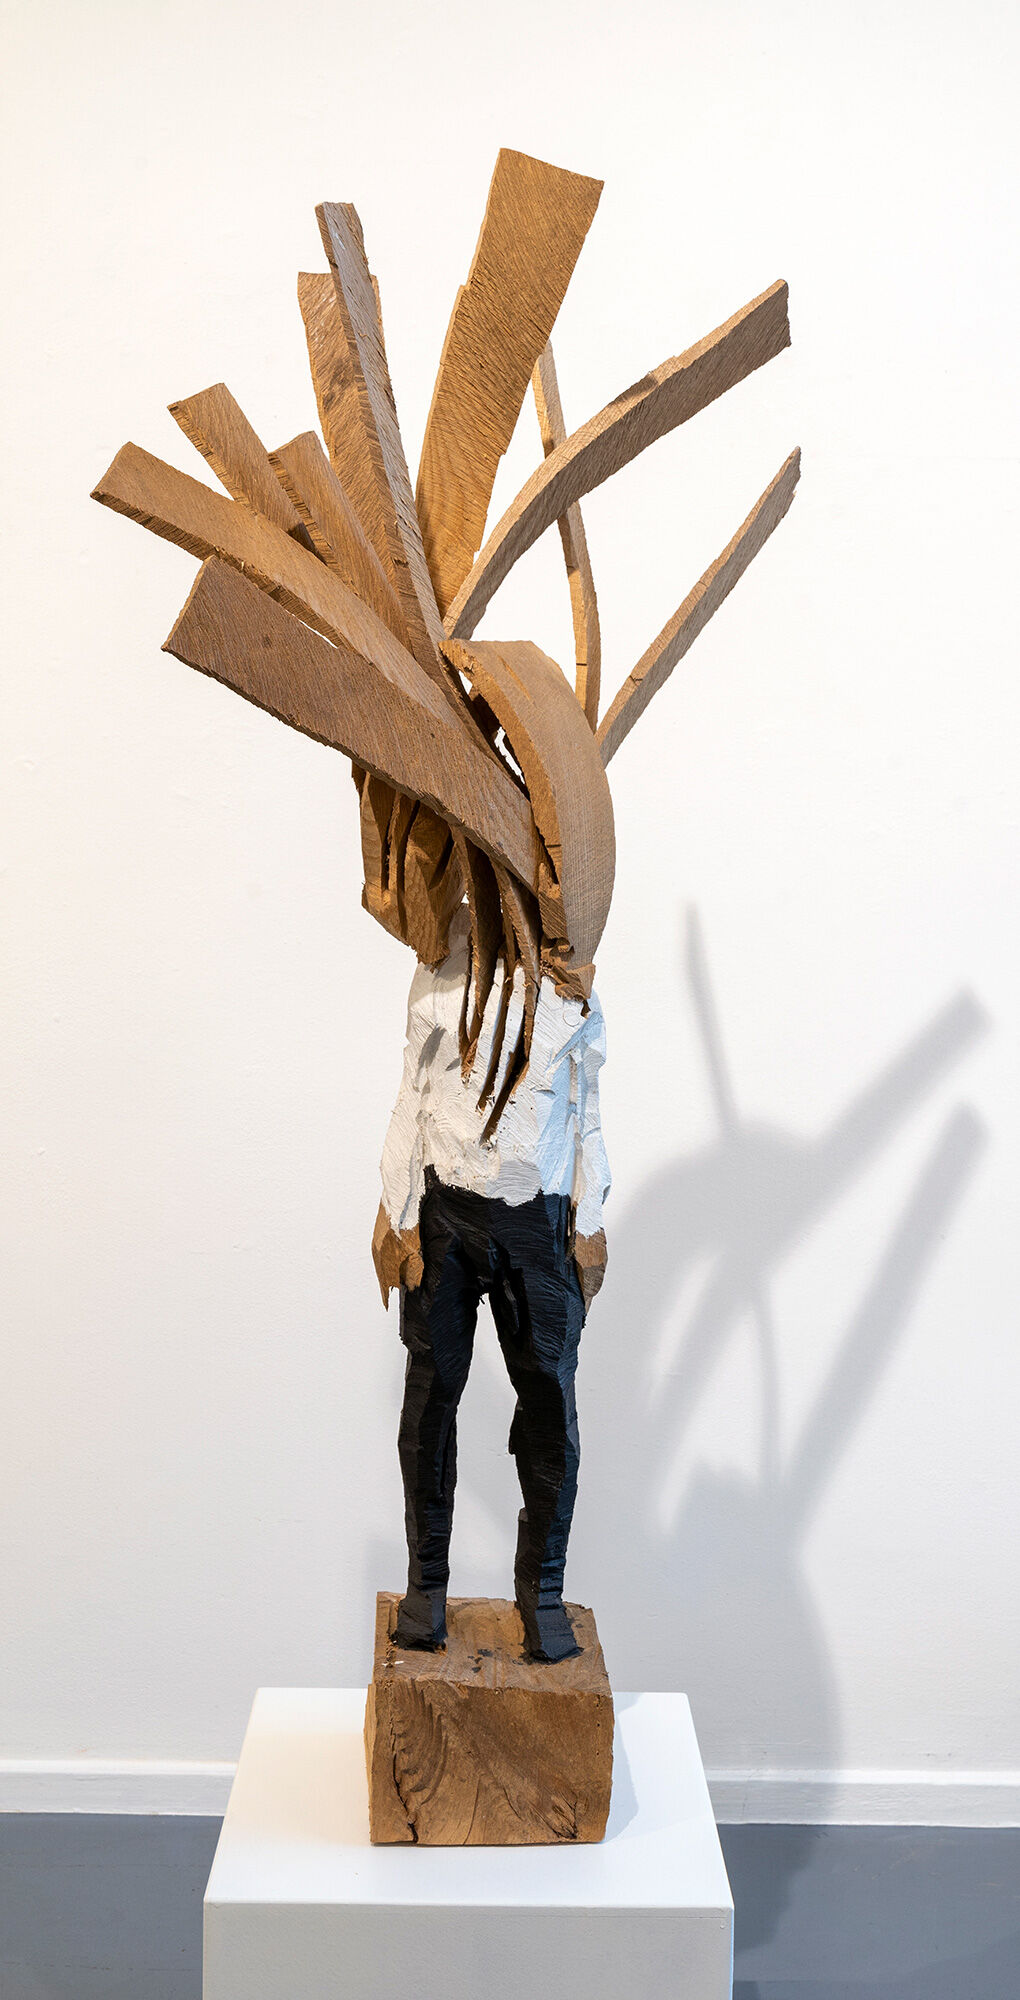 Skulptur "Uden titel" (2019) (Unikt værk), træ von Edvardas Racevicius